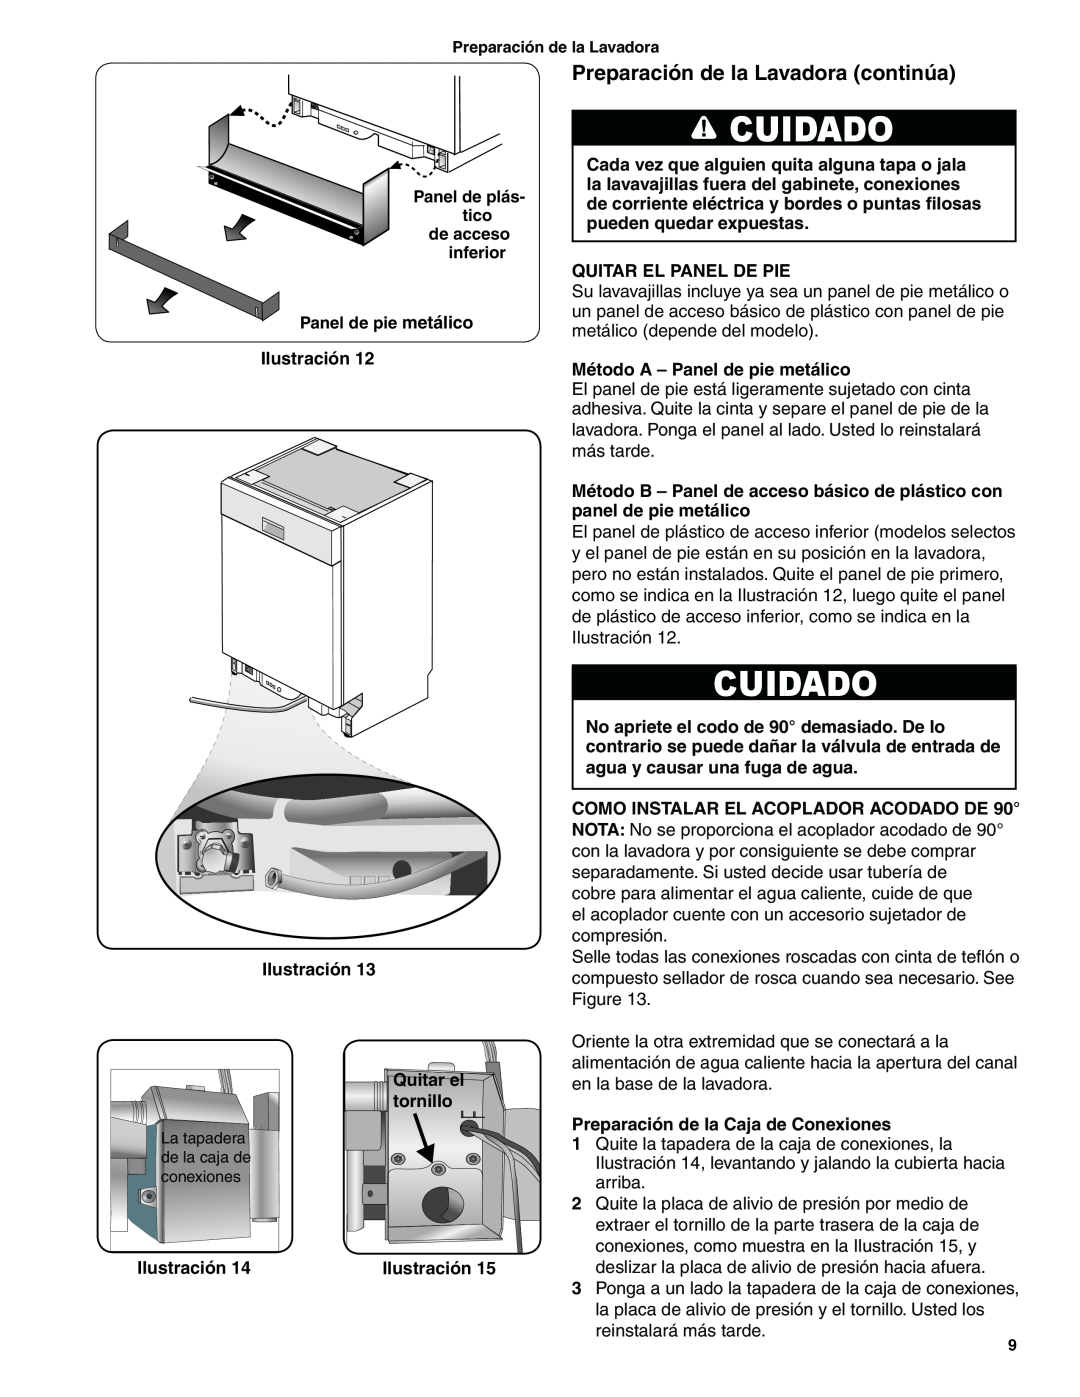 Bosch Appliances BSH Dishwasher important safety instructions Preparación de la Lavadora continúa, Cuidado 